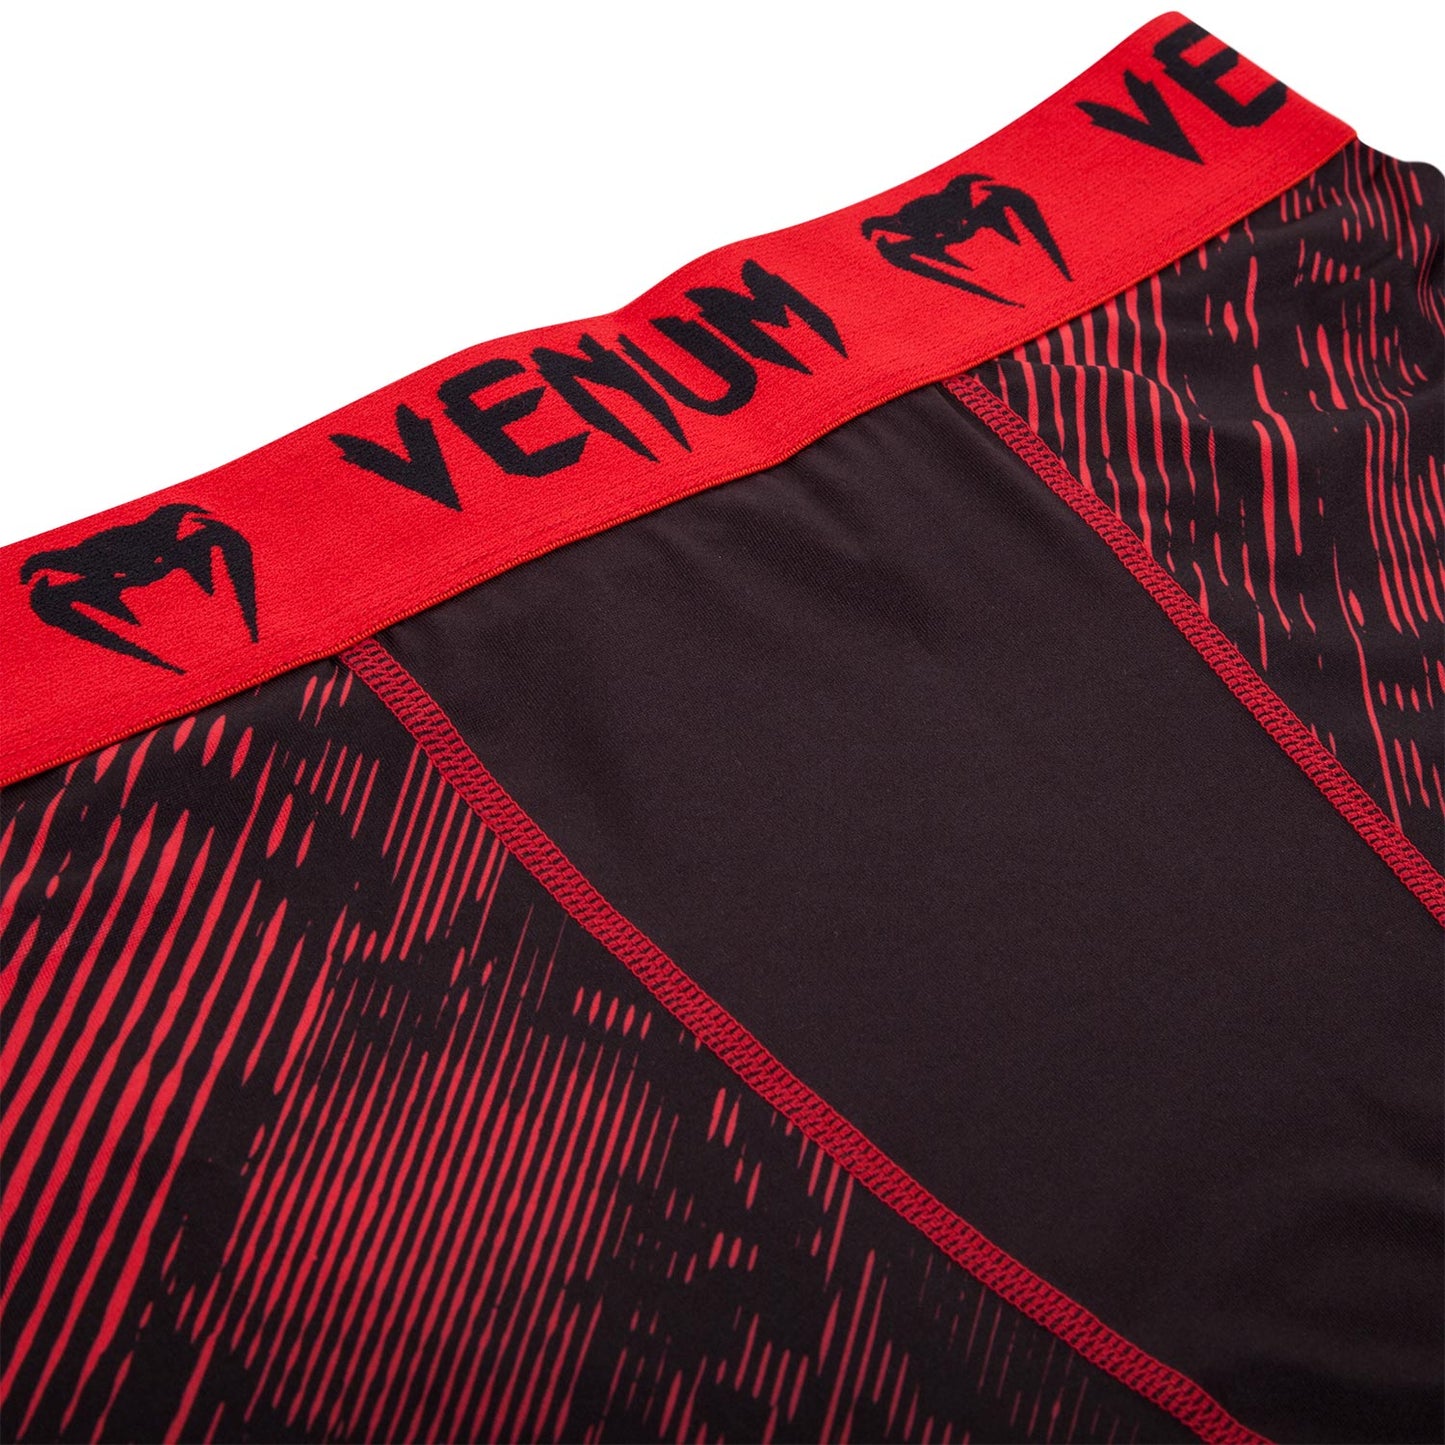 Venum Fusion Compression Shorts - Black/Red